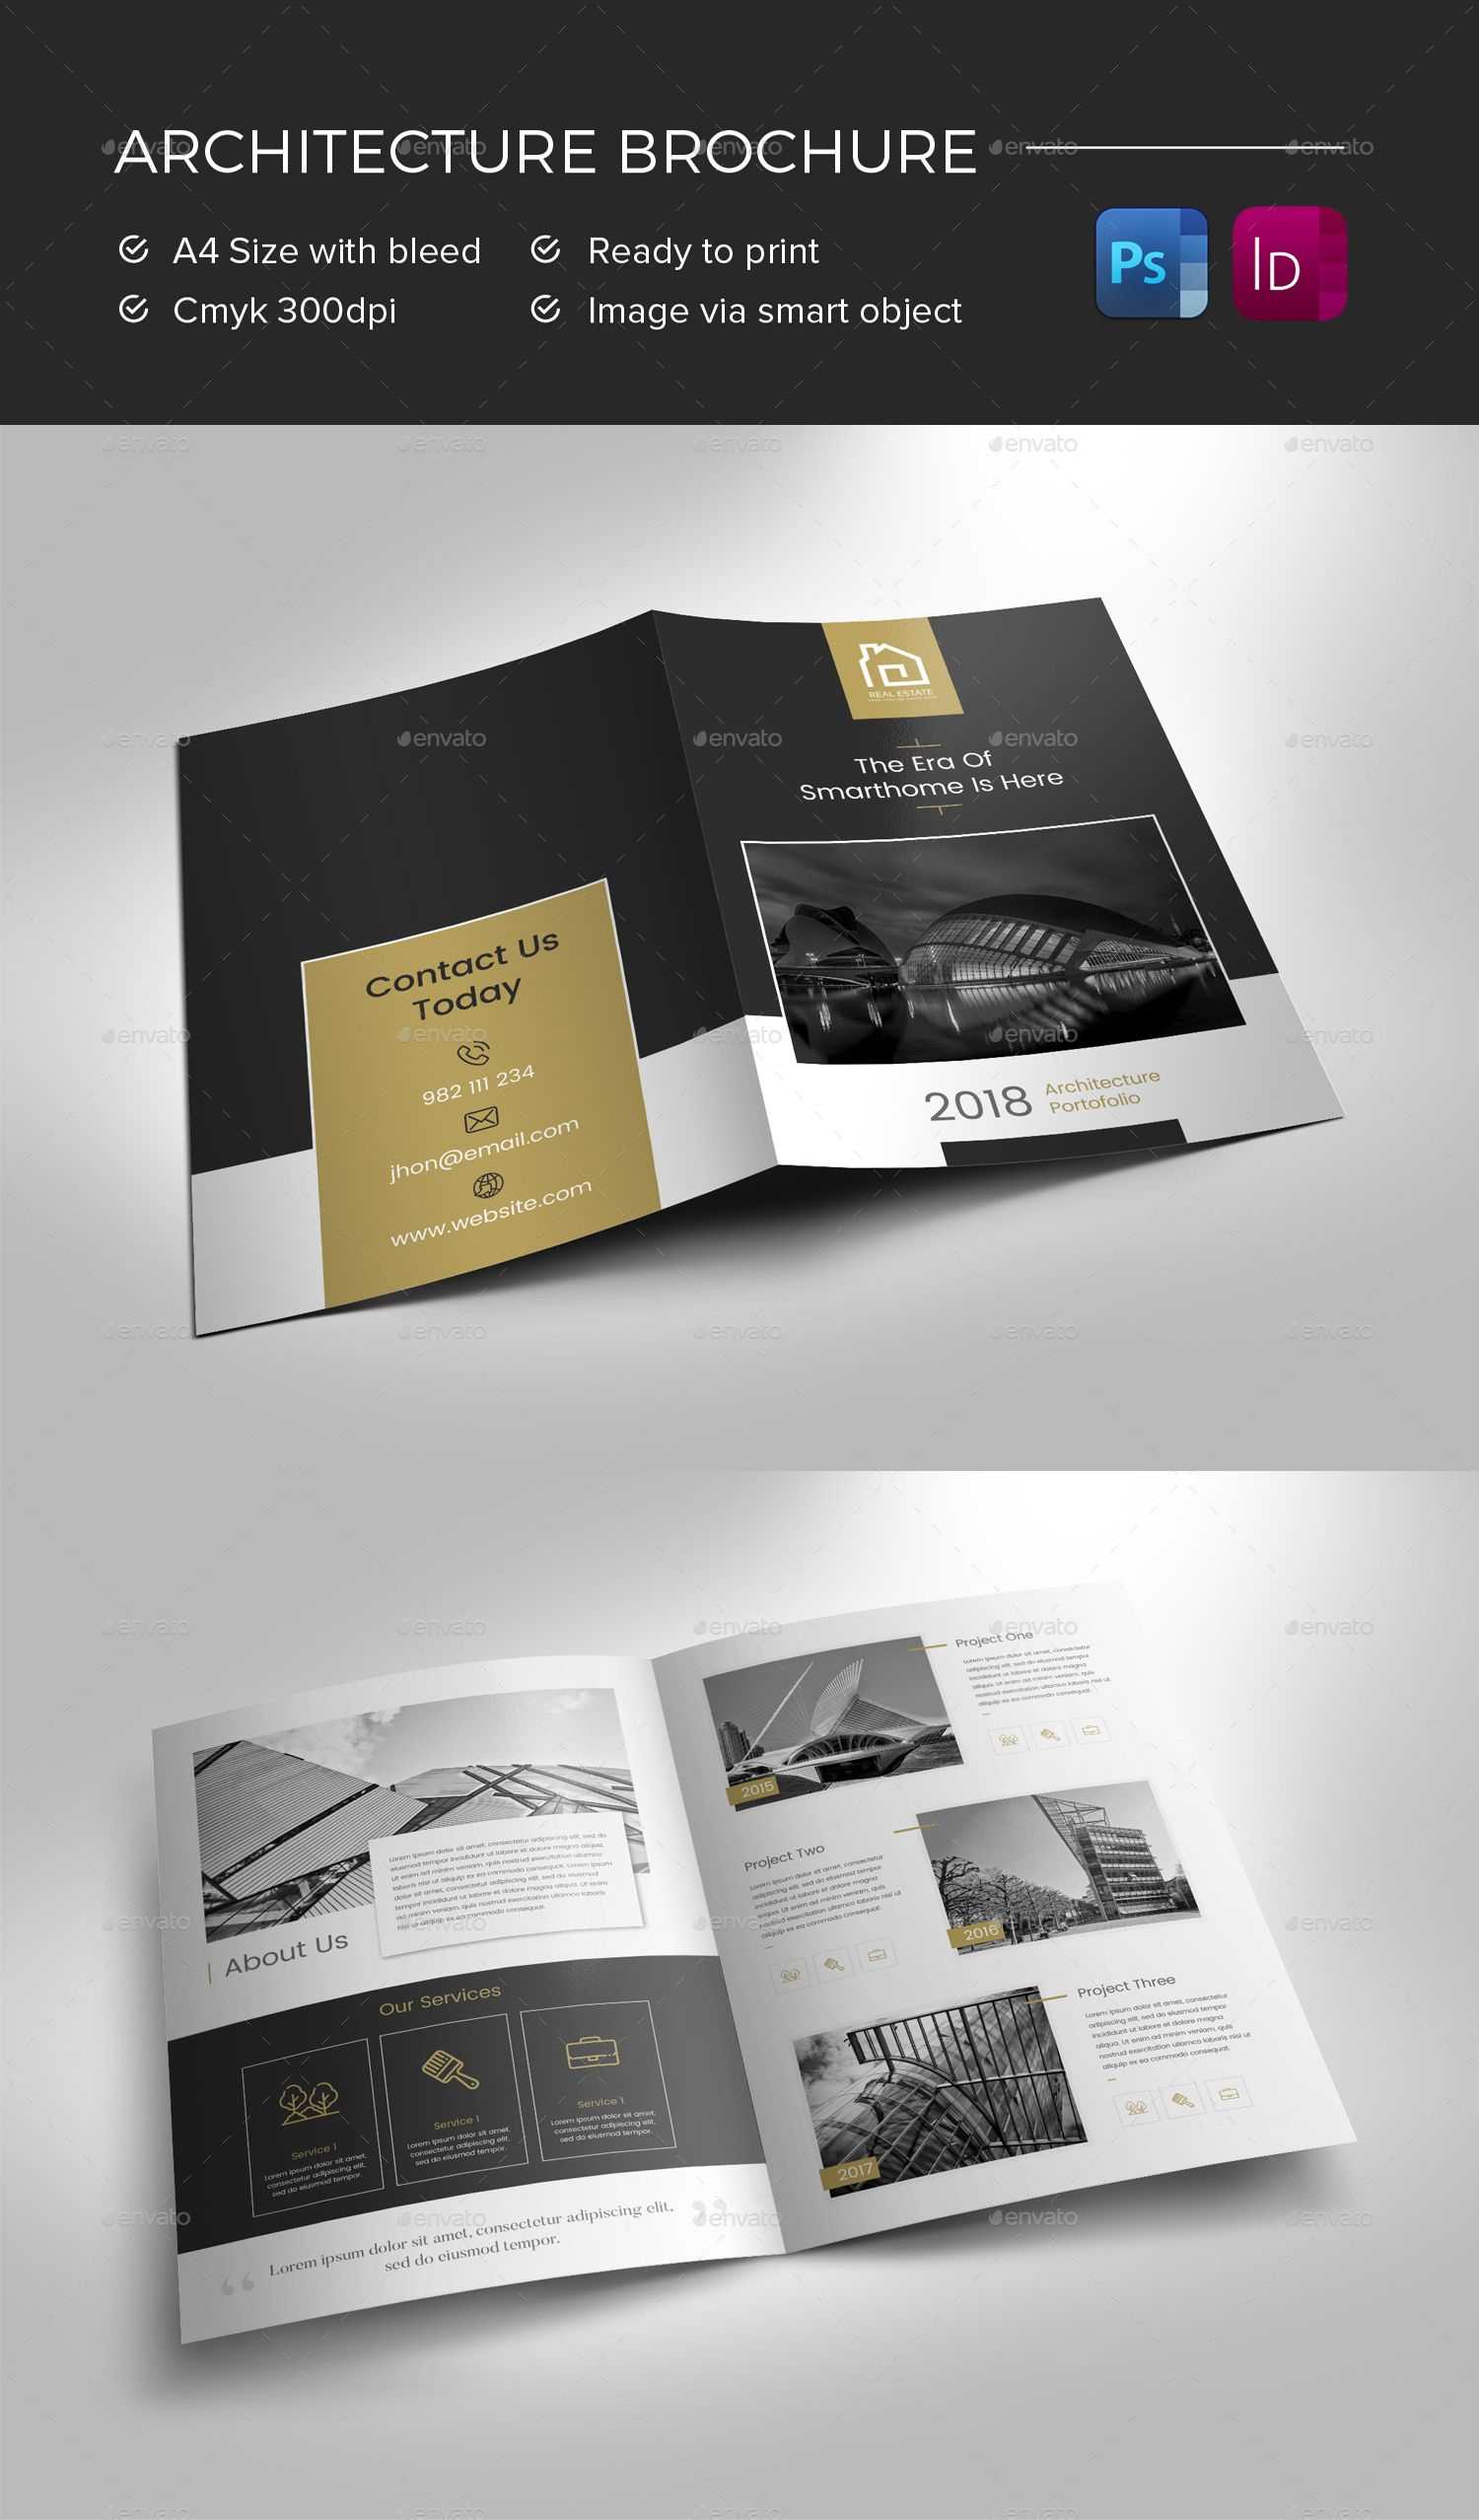 Architecture Brochure Preview - Graphicriver | Brochure In Architecture Brochure Templates Free Download